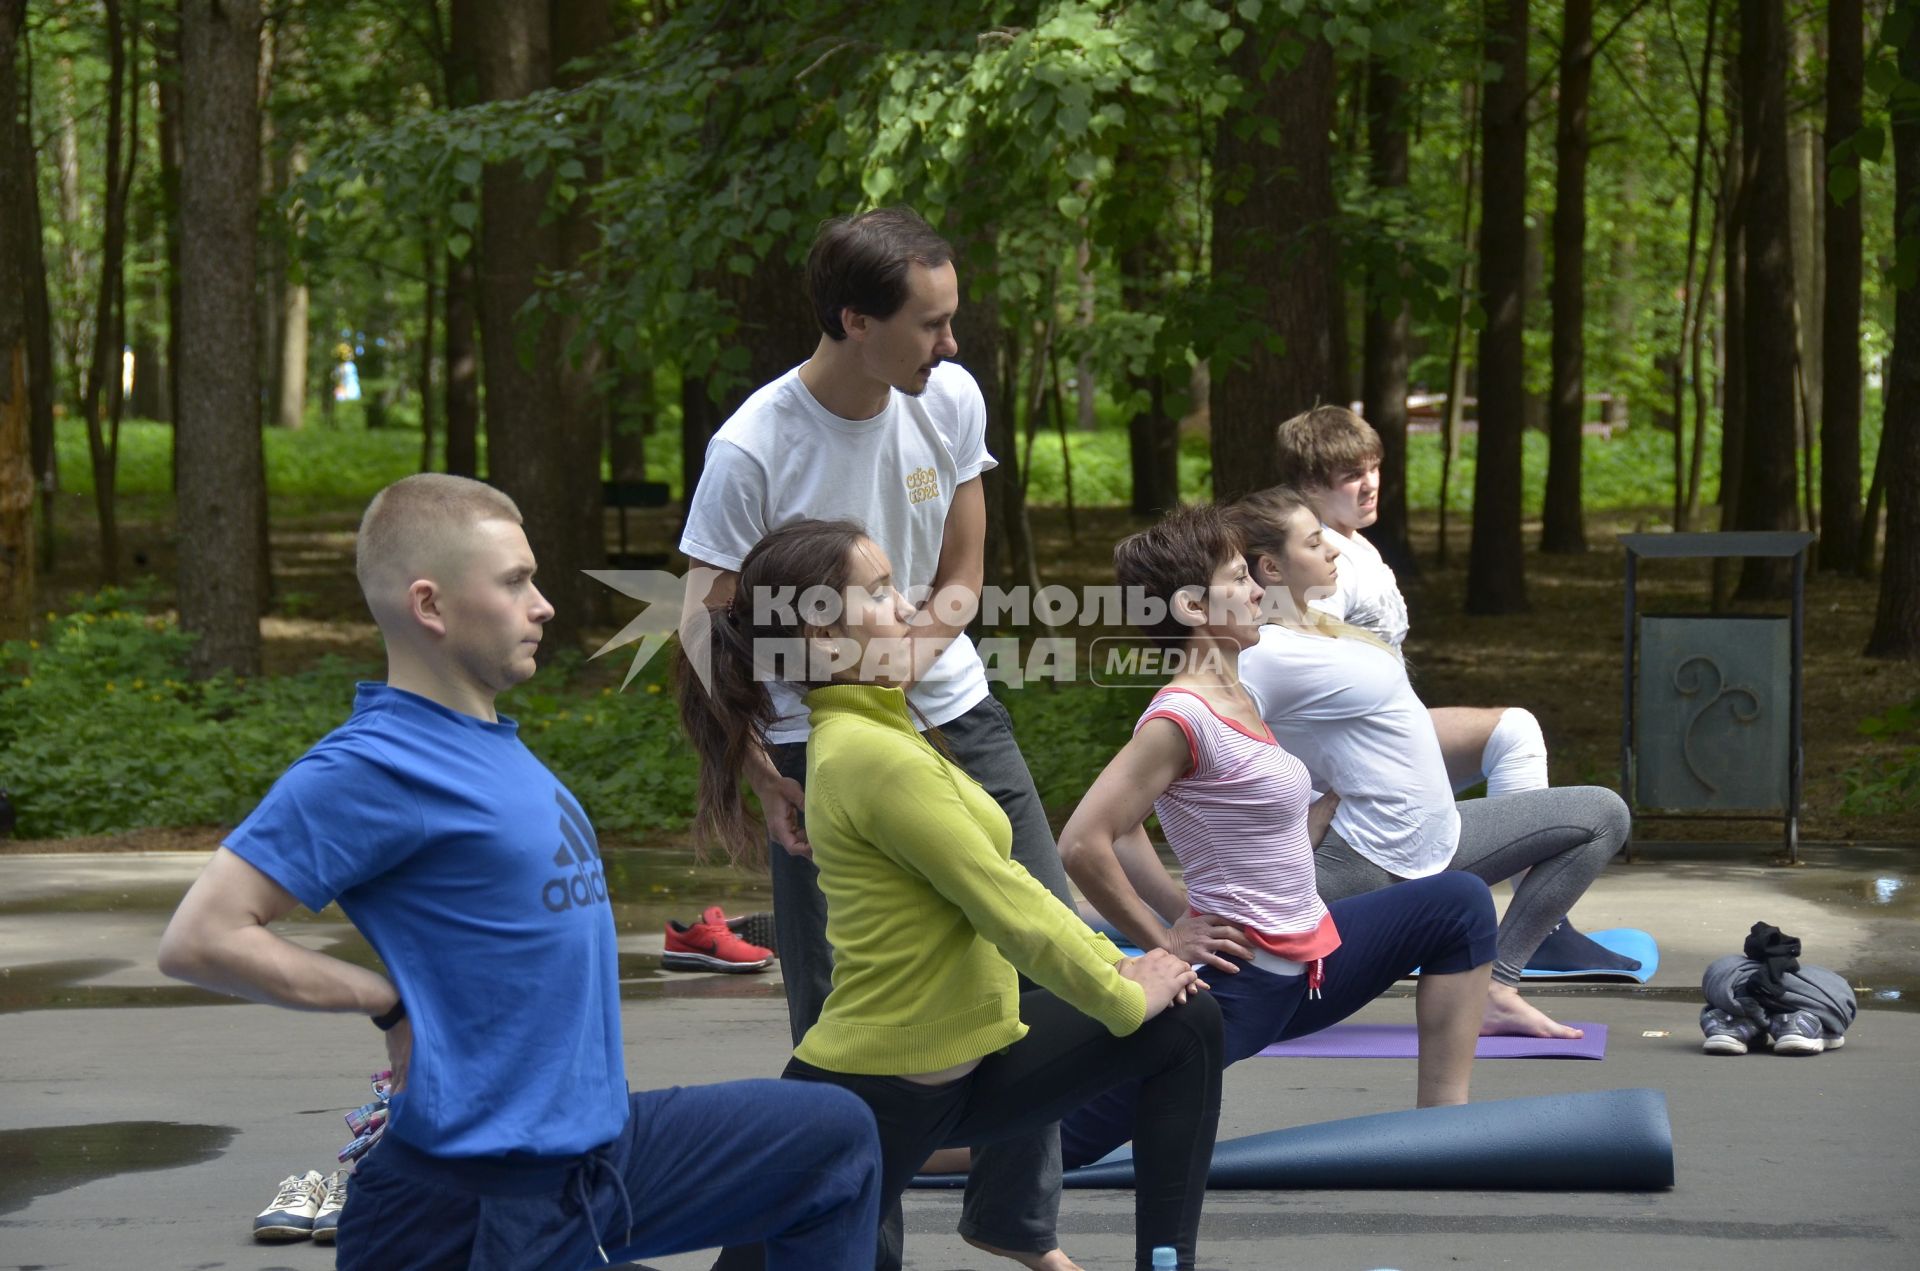 Тула.   Горожане во время занятий по йоге на территории парка.